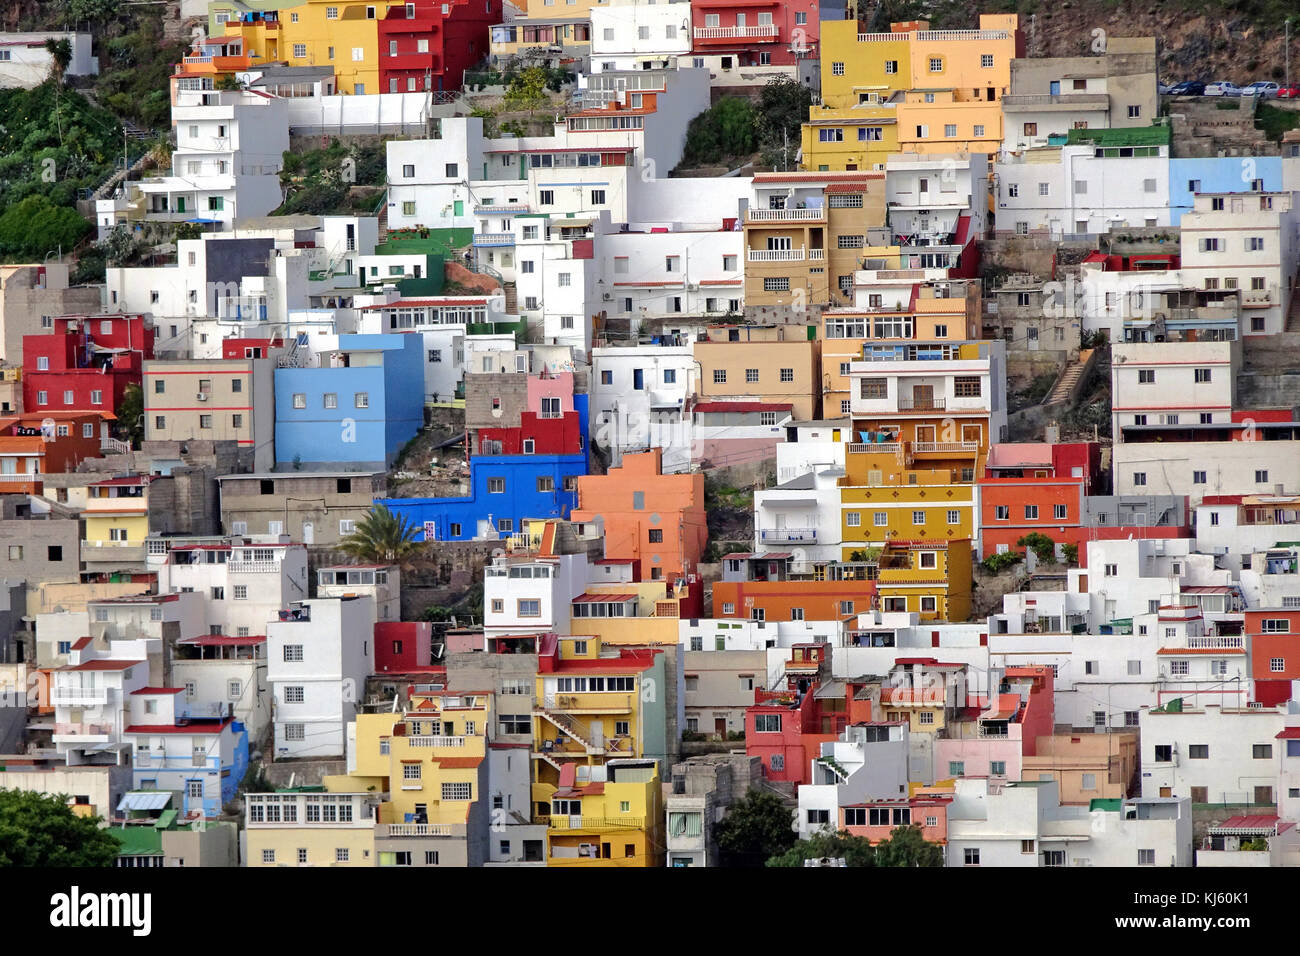 Cubo di colorate case a san andres, villaggio di pescatori che si trova a sud-est dell'isola, isola di Tenerife, Isole canarie, Spagna Foto Stock